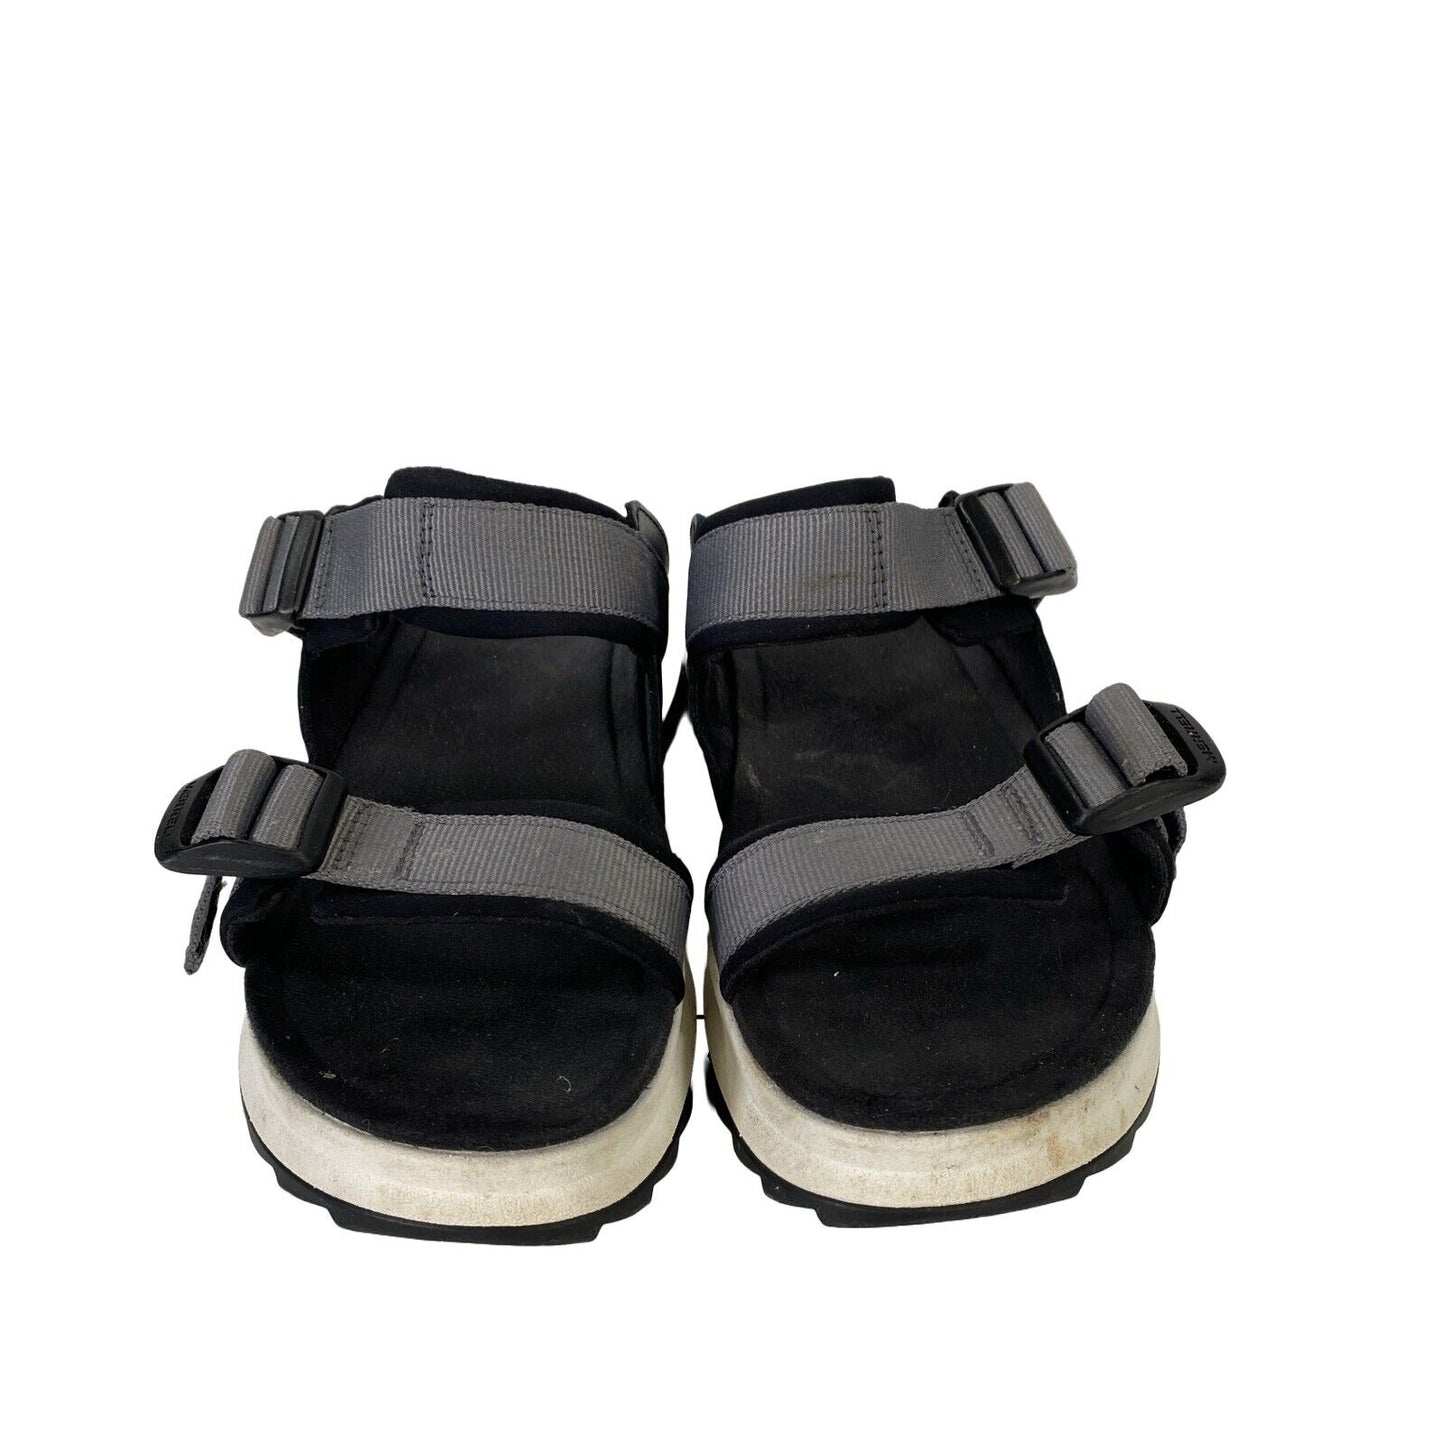 Merrell Women's Black/White Alpine Cush Slide Sandals - 8